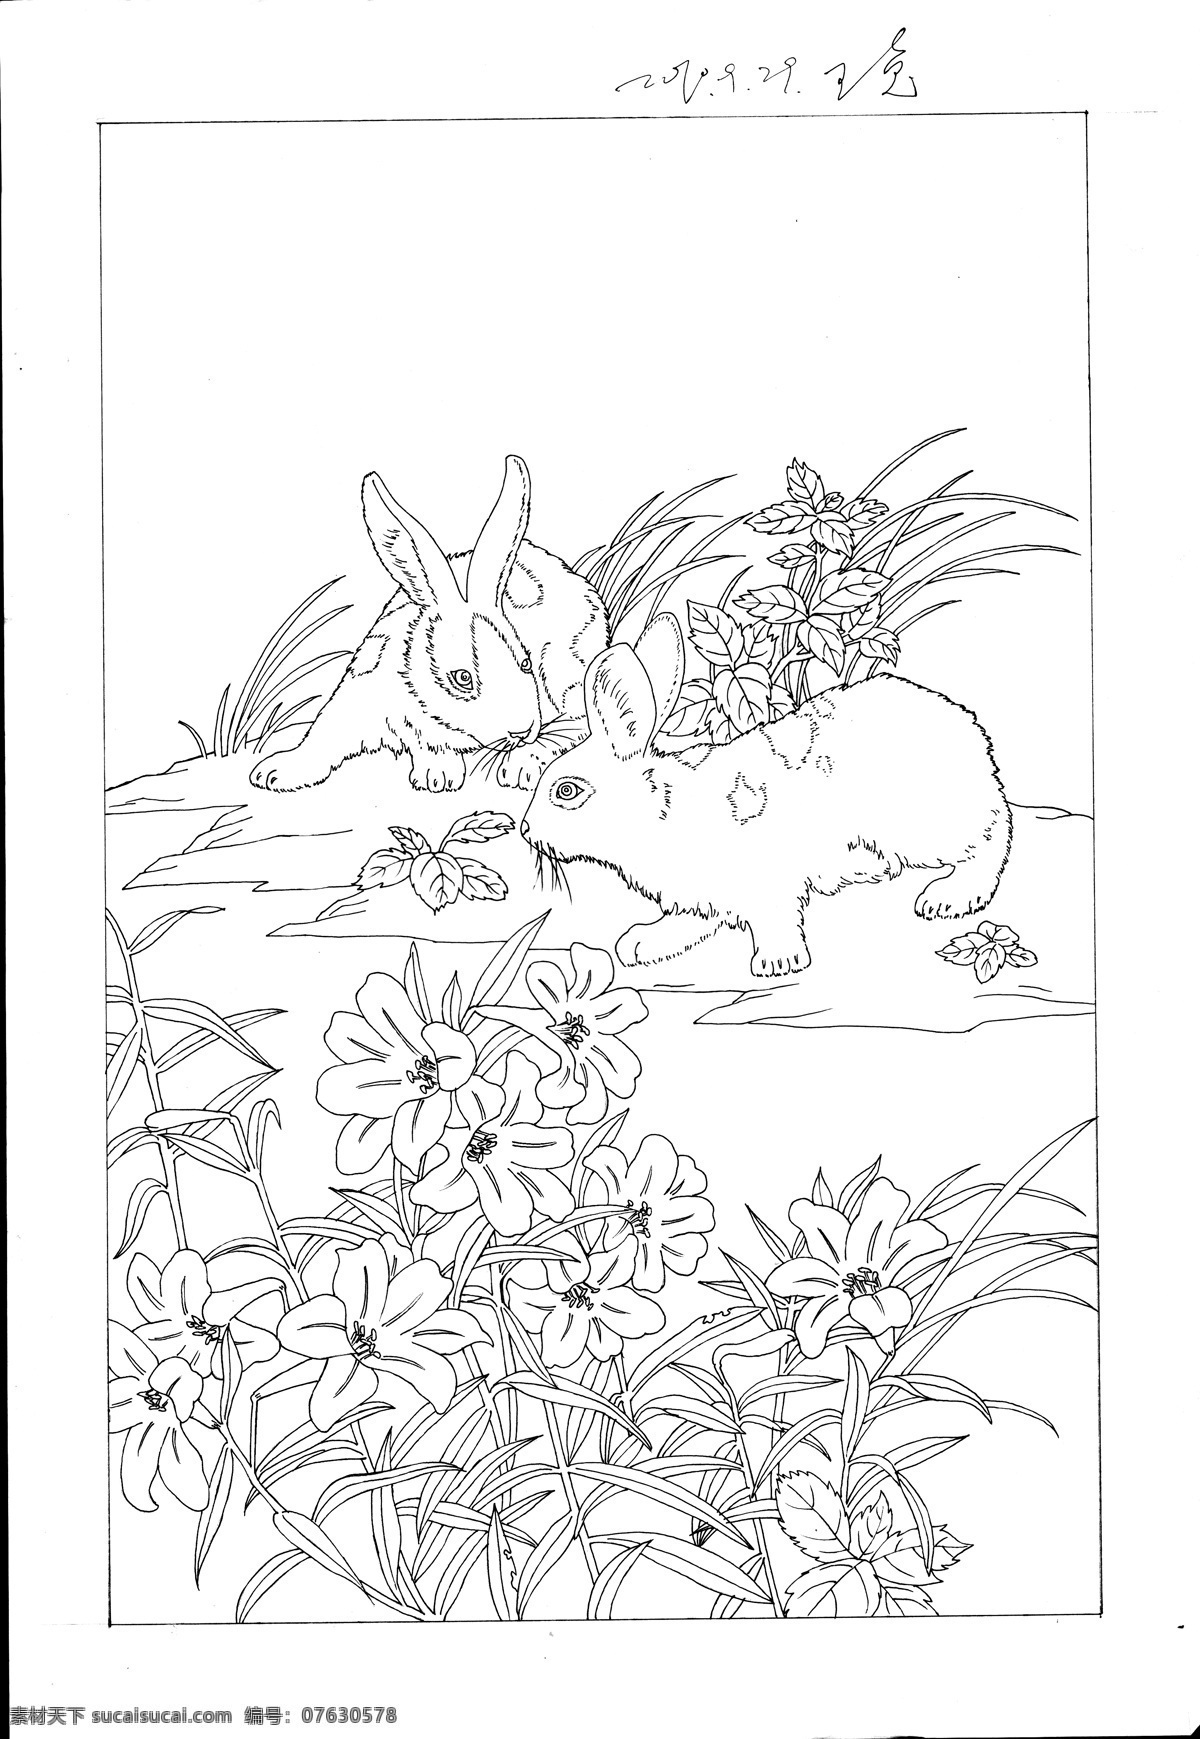 迎 福 兔 白描 线 稿 图 线稿 兔年 动物 风景 设计图 挂历 辛卯年 插画 年画 绘画书法 文化艺术